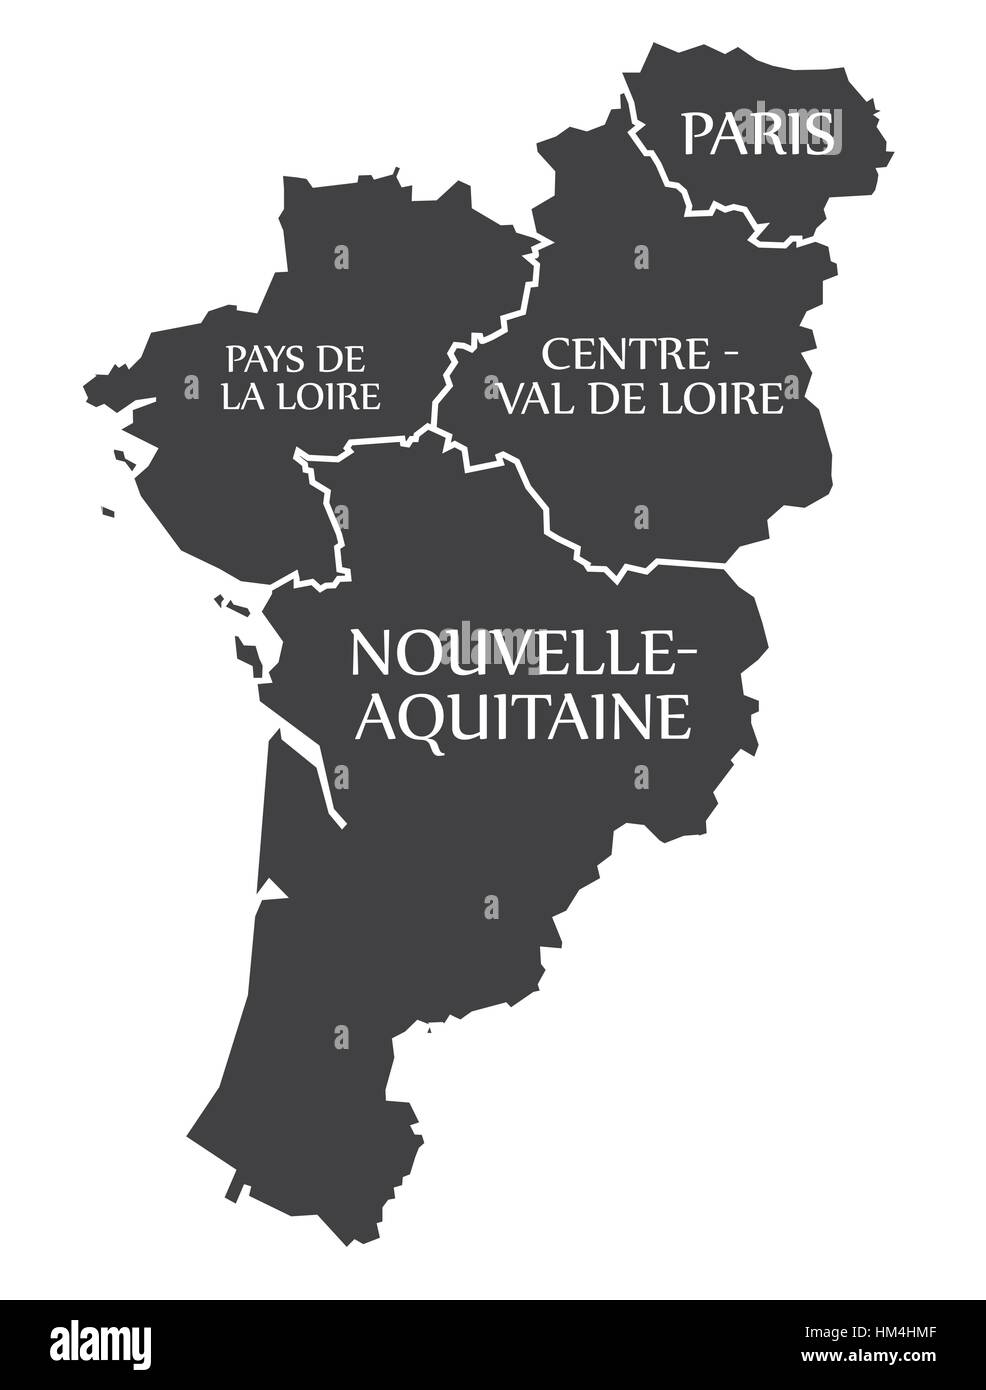 Pays De La Loire - Paris - Centre - Val de Loire - Nouvelle - Aquitaine Karte Frankreich Abbildung Stock Vektor